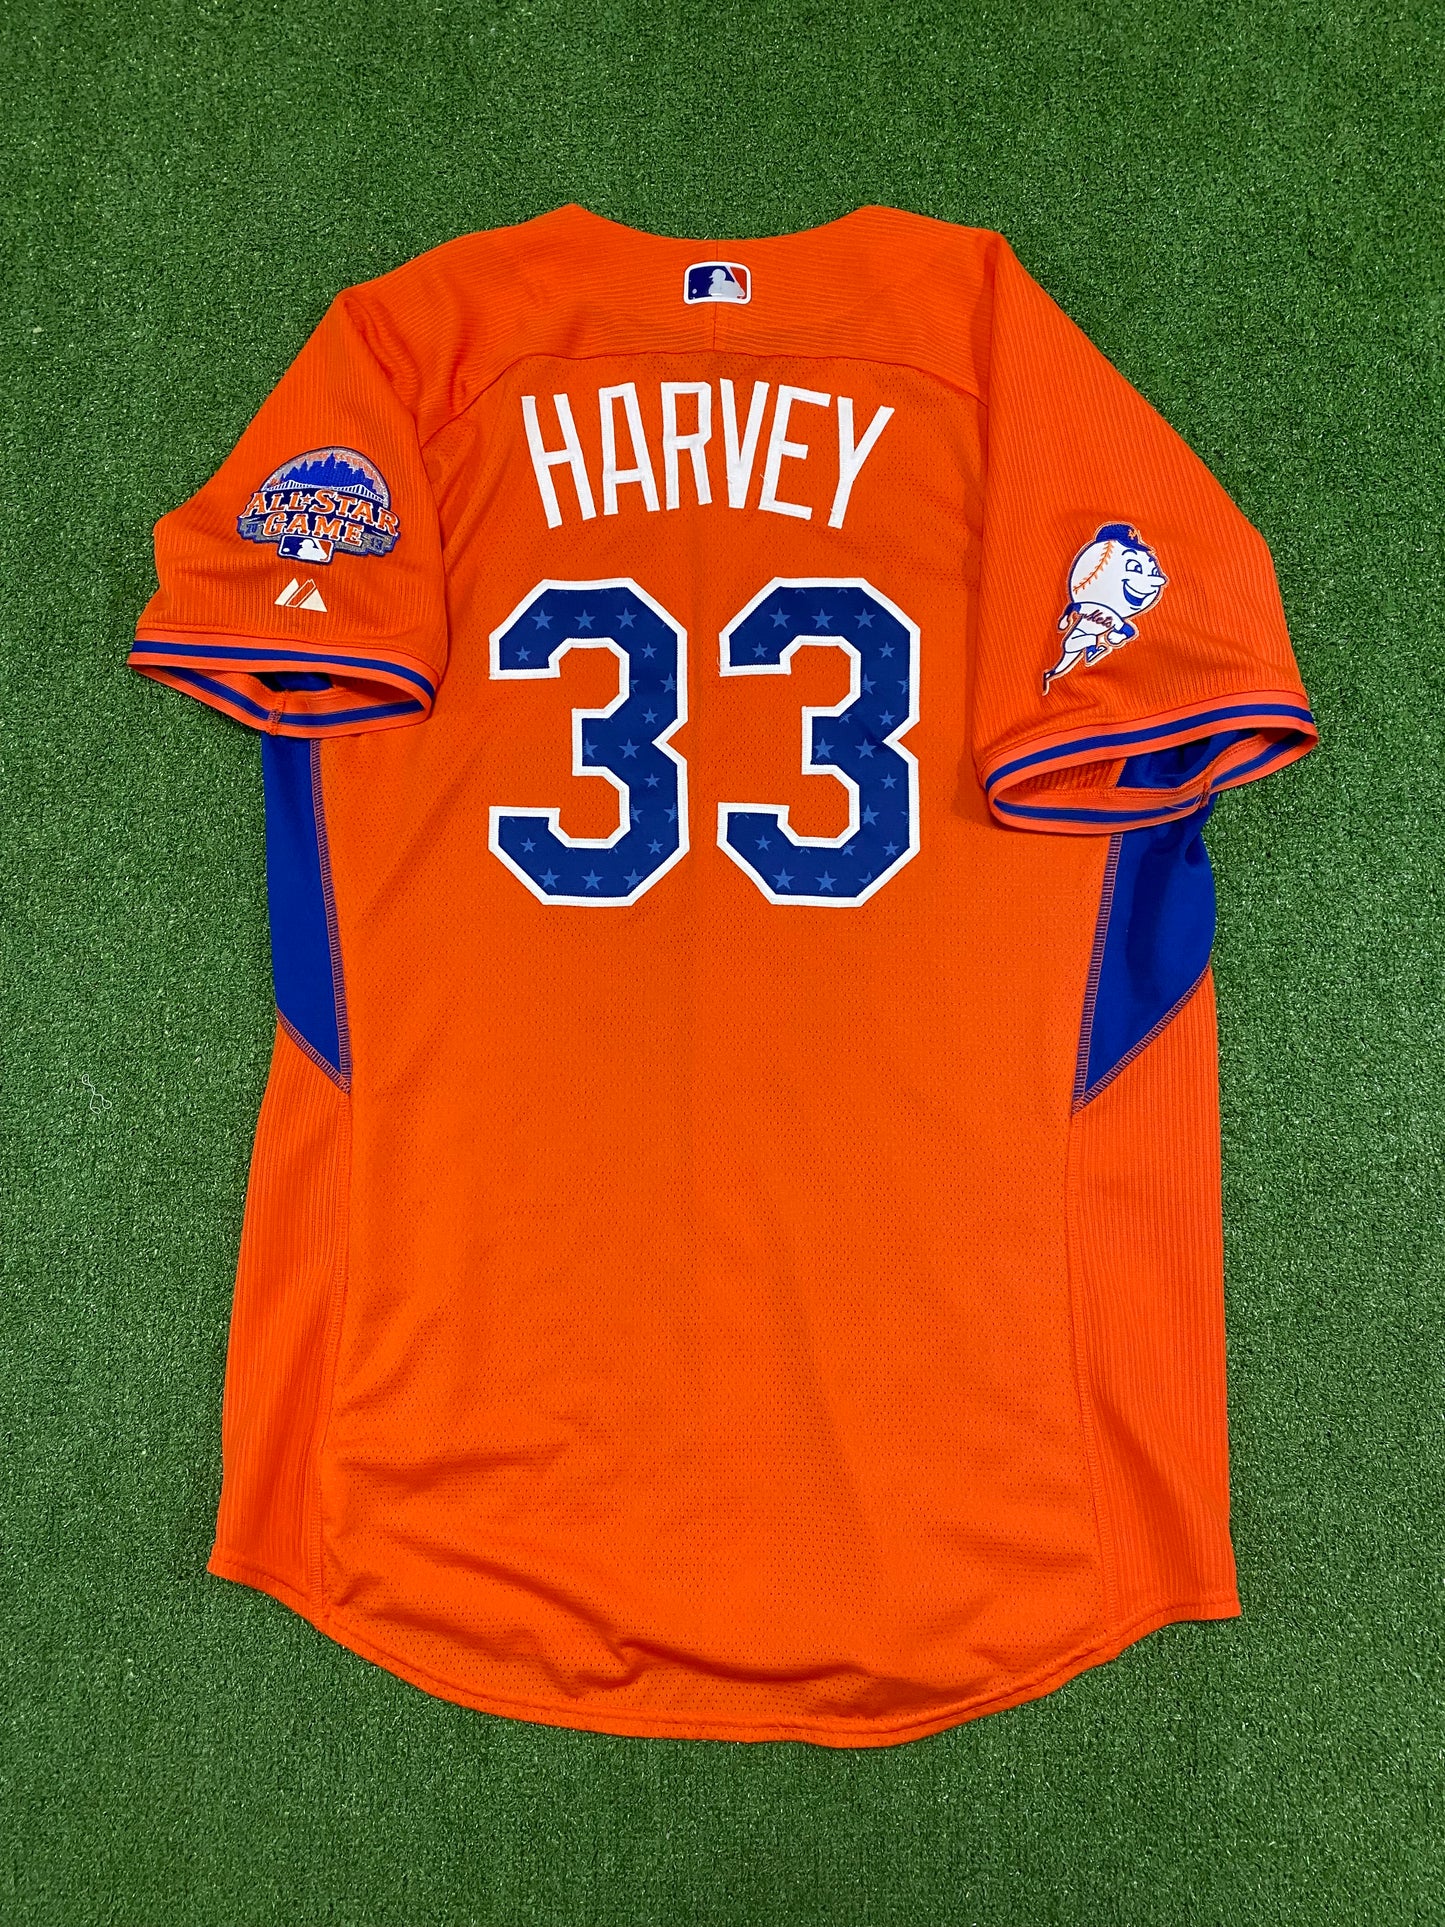 2013 MLB Majestic All Star Game Jersey Matt Harvey XL